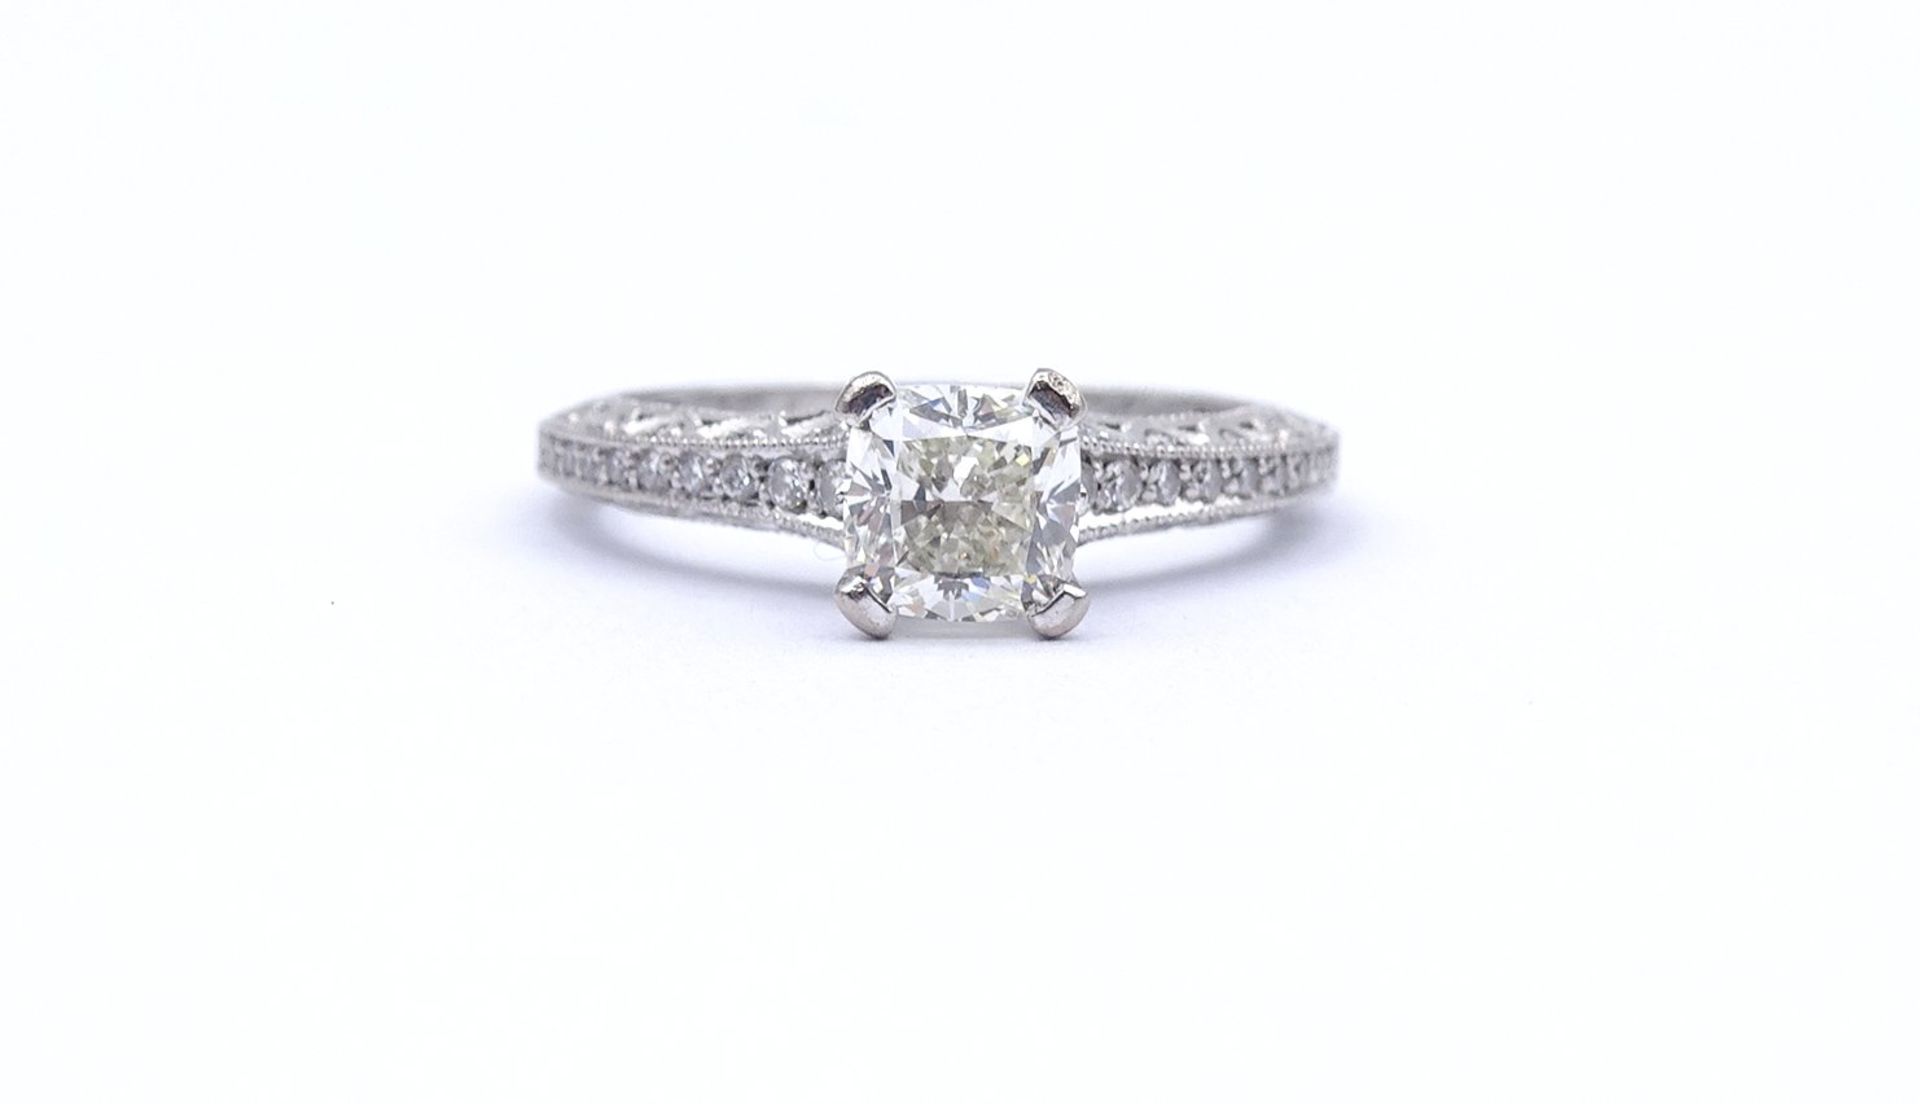 Princess Cut Ring - Verlobungsring , Princess 1,0ct., und 47 kl. Diamanten si, G-H, WG 18K "Tacori" - Image 12 of 20